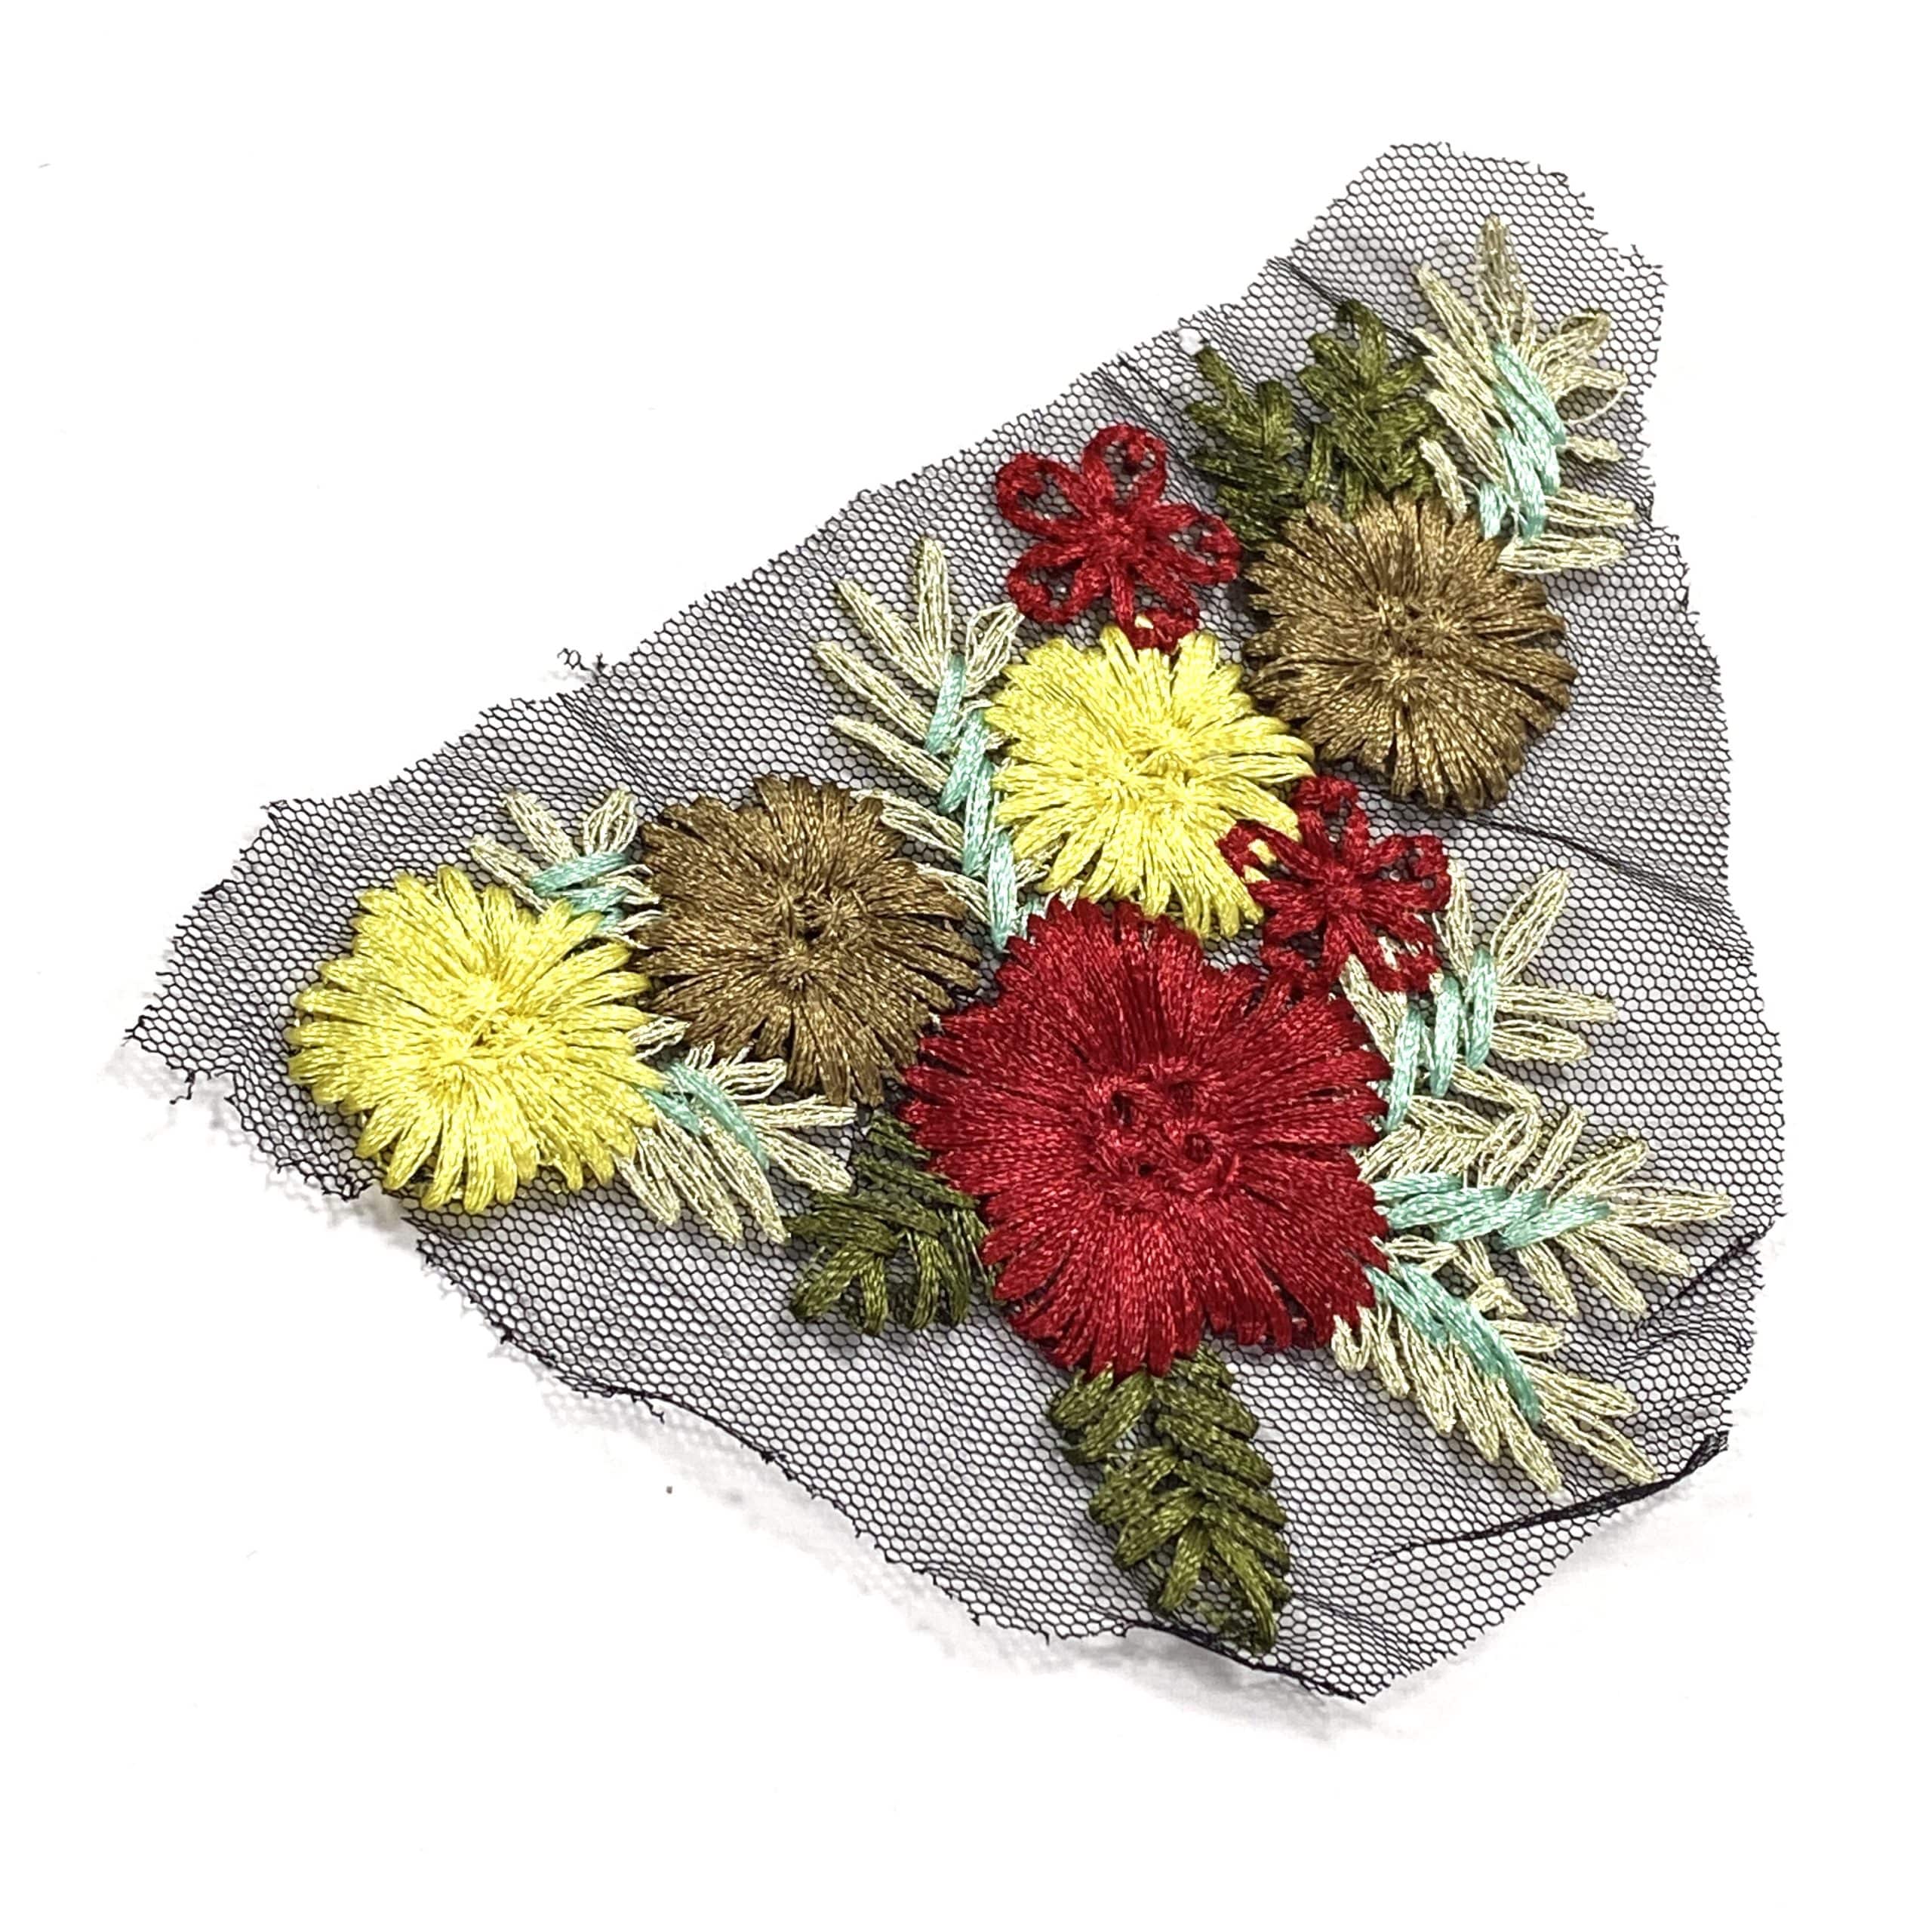 varonil pasatiempo Tratar Aplique bordadode flores para ropa 15x10cm | Vindastore.com